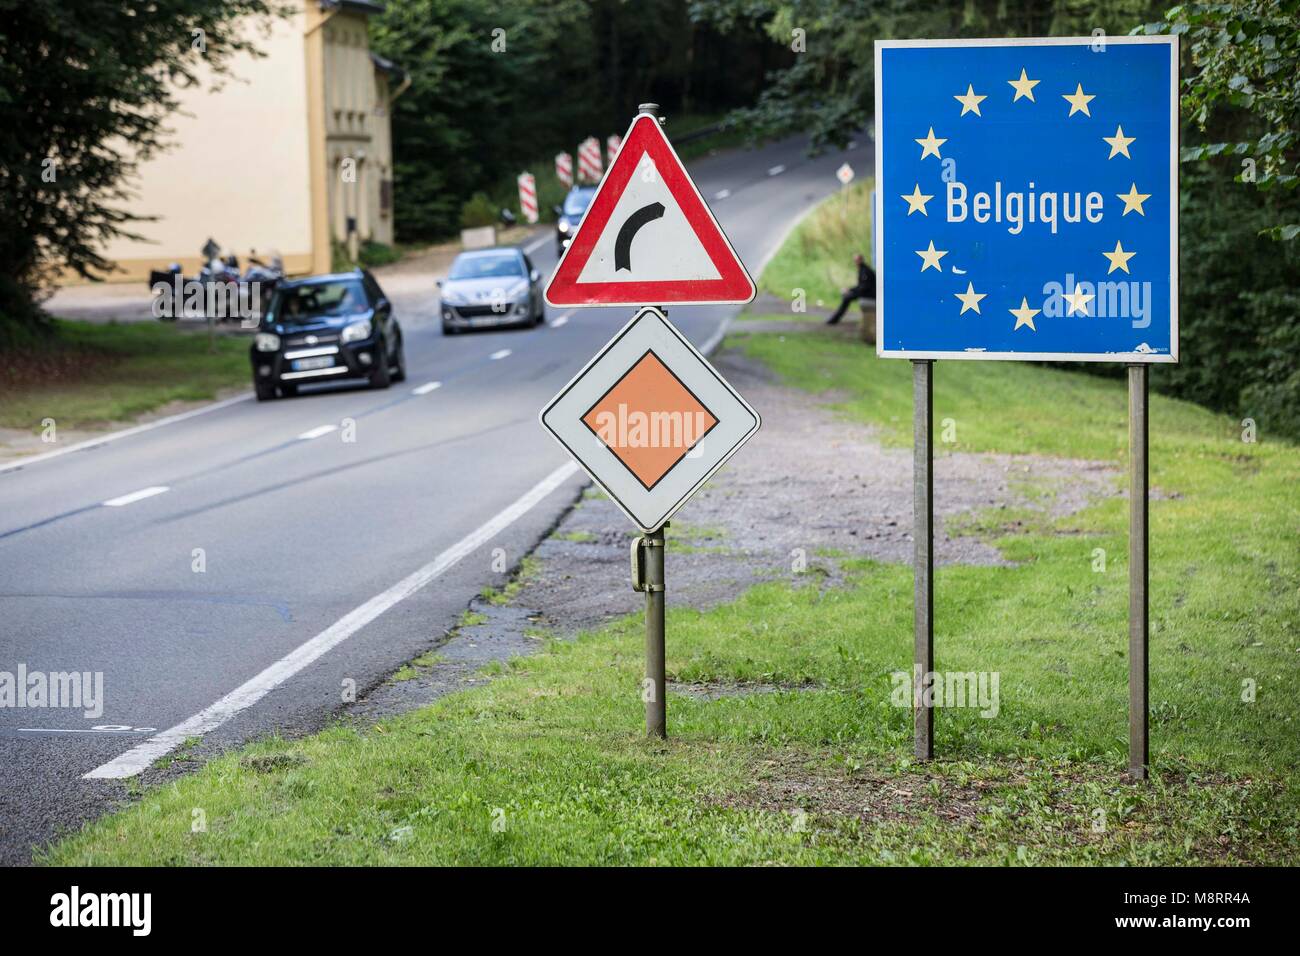 Ein blaues Schild mit dem Schriftzug Belgique umrandet von goldenen EU-Sternen symbolisiert den Grenzübertritt nach Belgien auf dieser Landstrasse in  Stock Photo